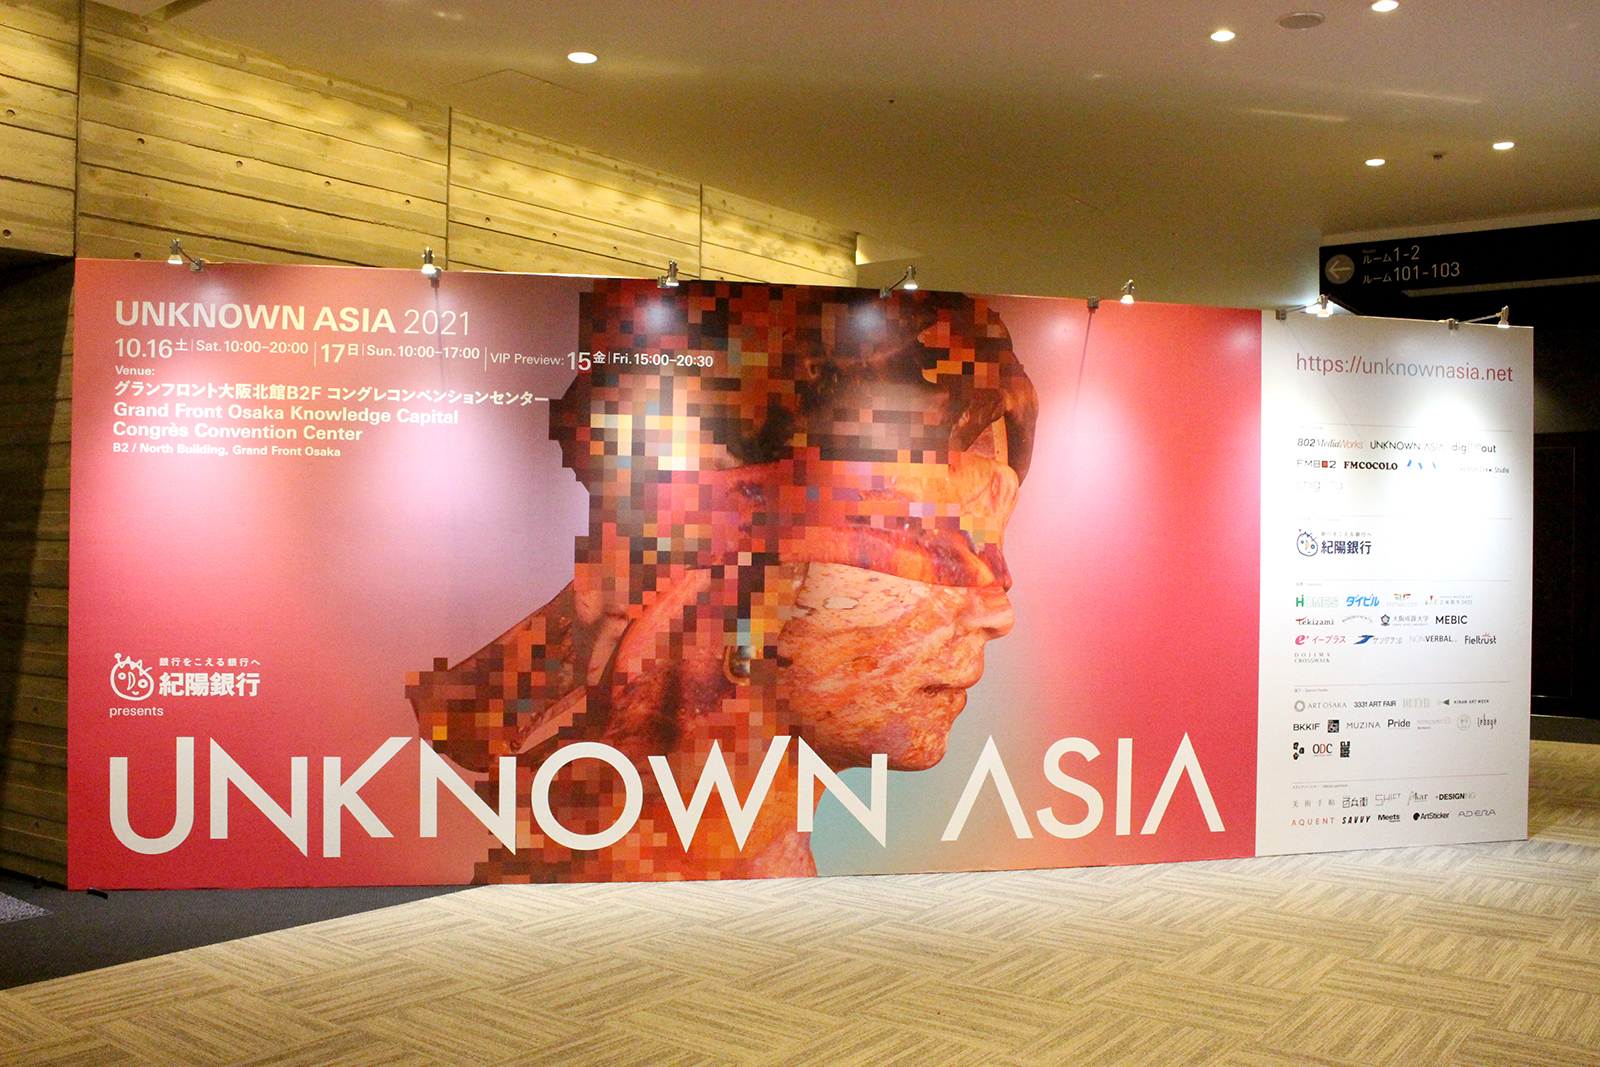 関西で開催されている秋のアートフェア『紀陽銀行 presents UNKNOWN ASIA 2021』